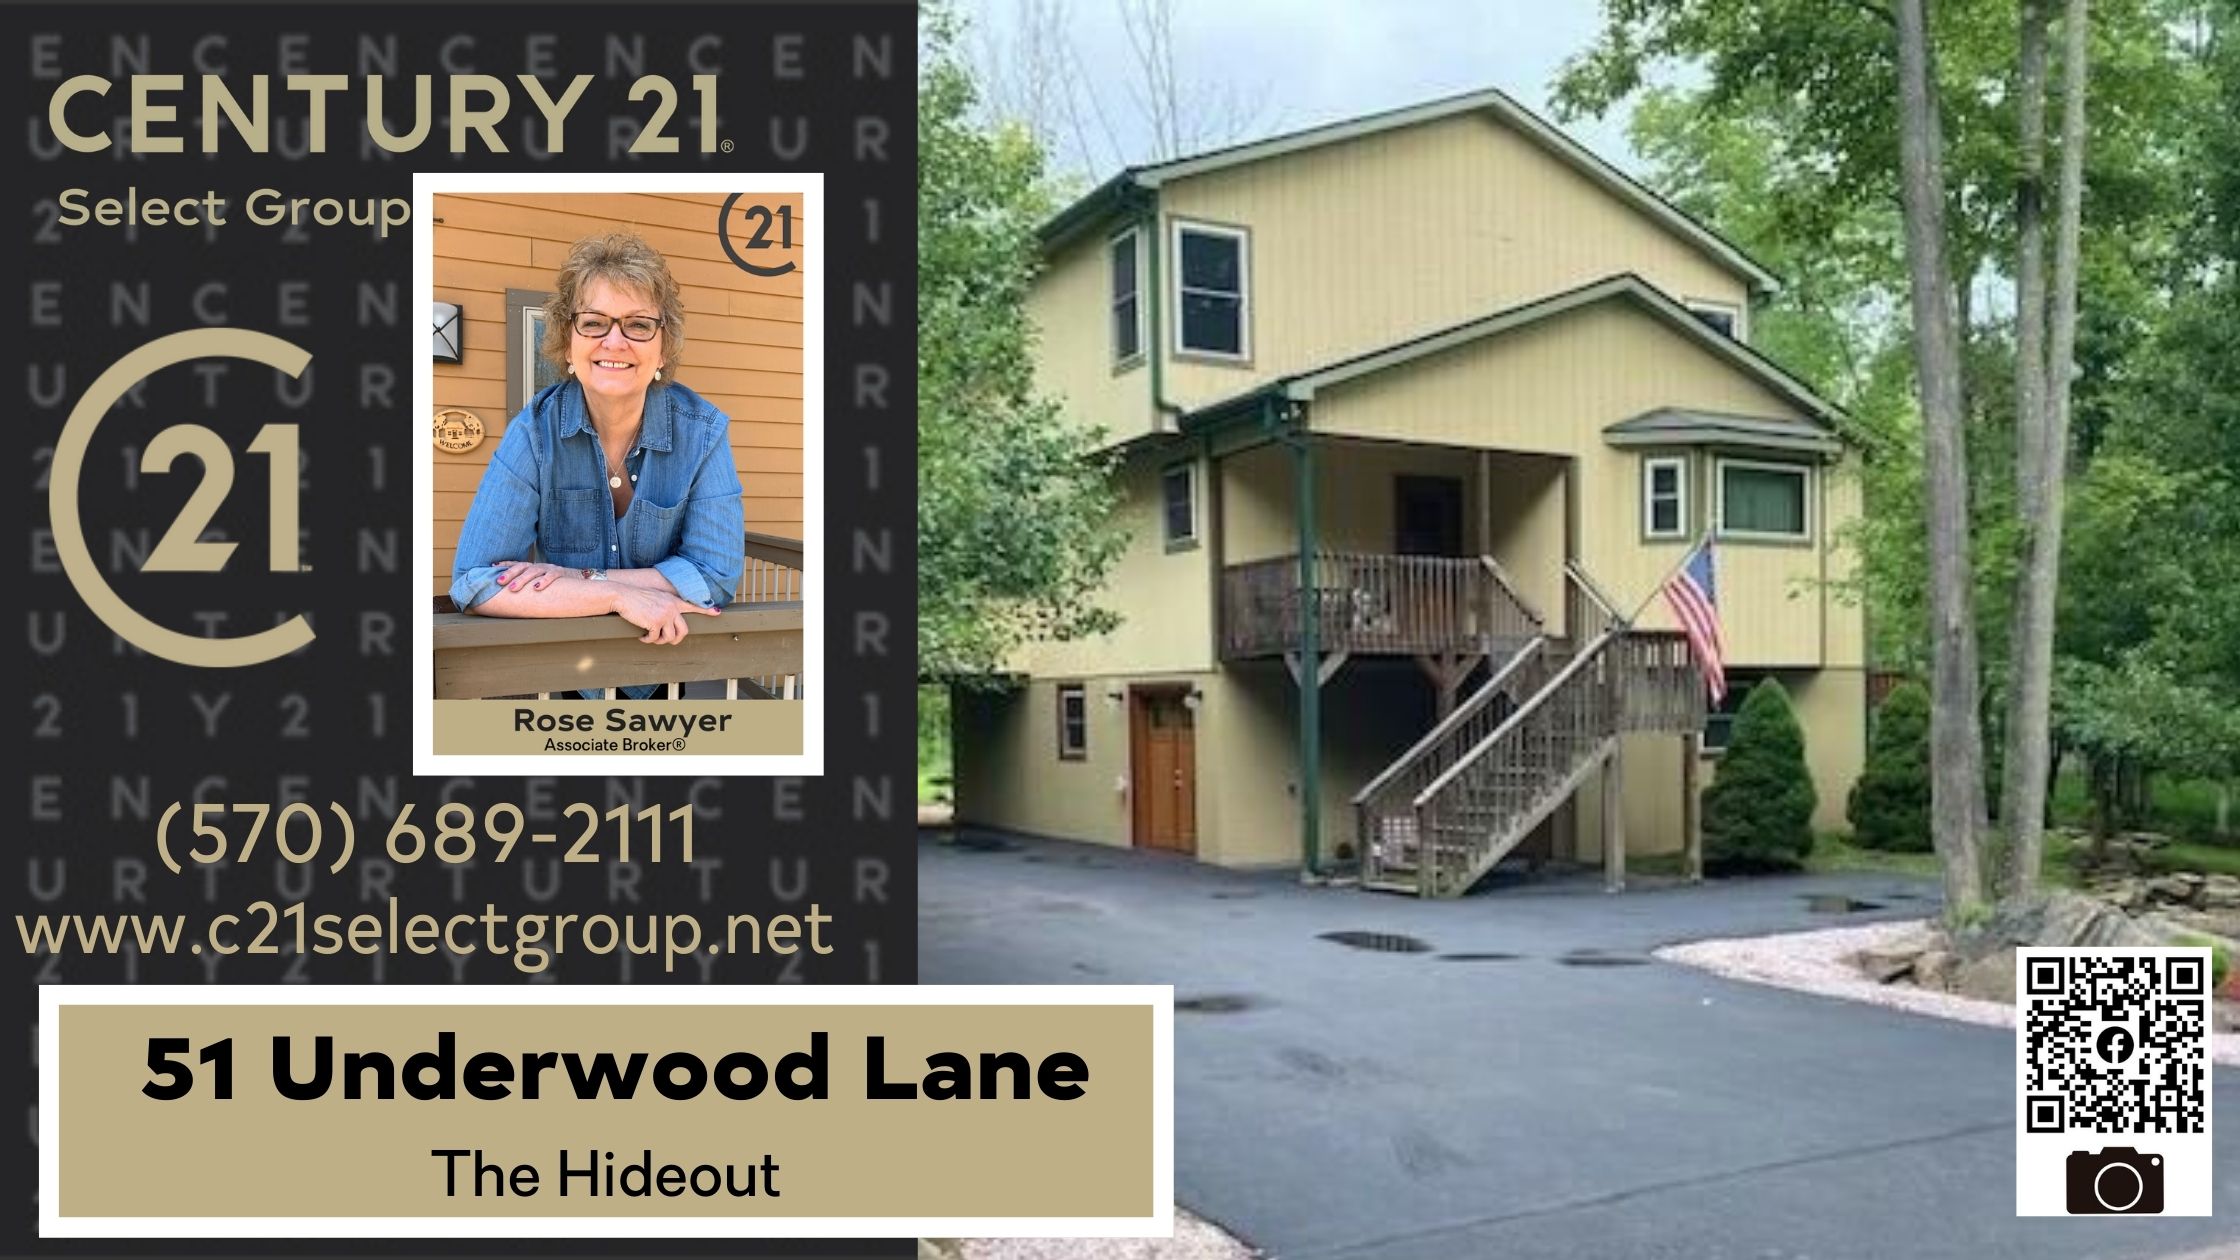 51 Underwood Lane: Open Floor Plan Home in Hideout Community